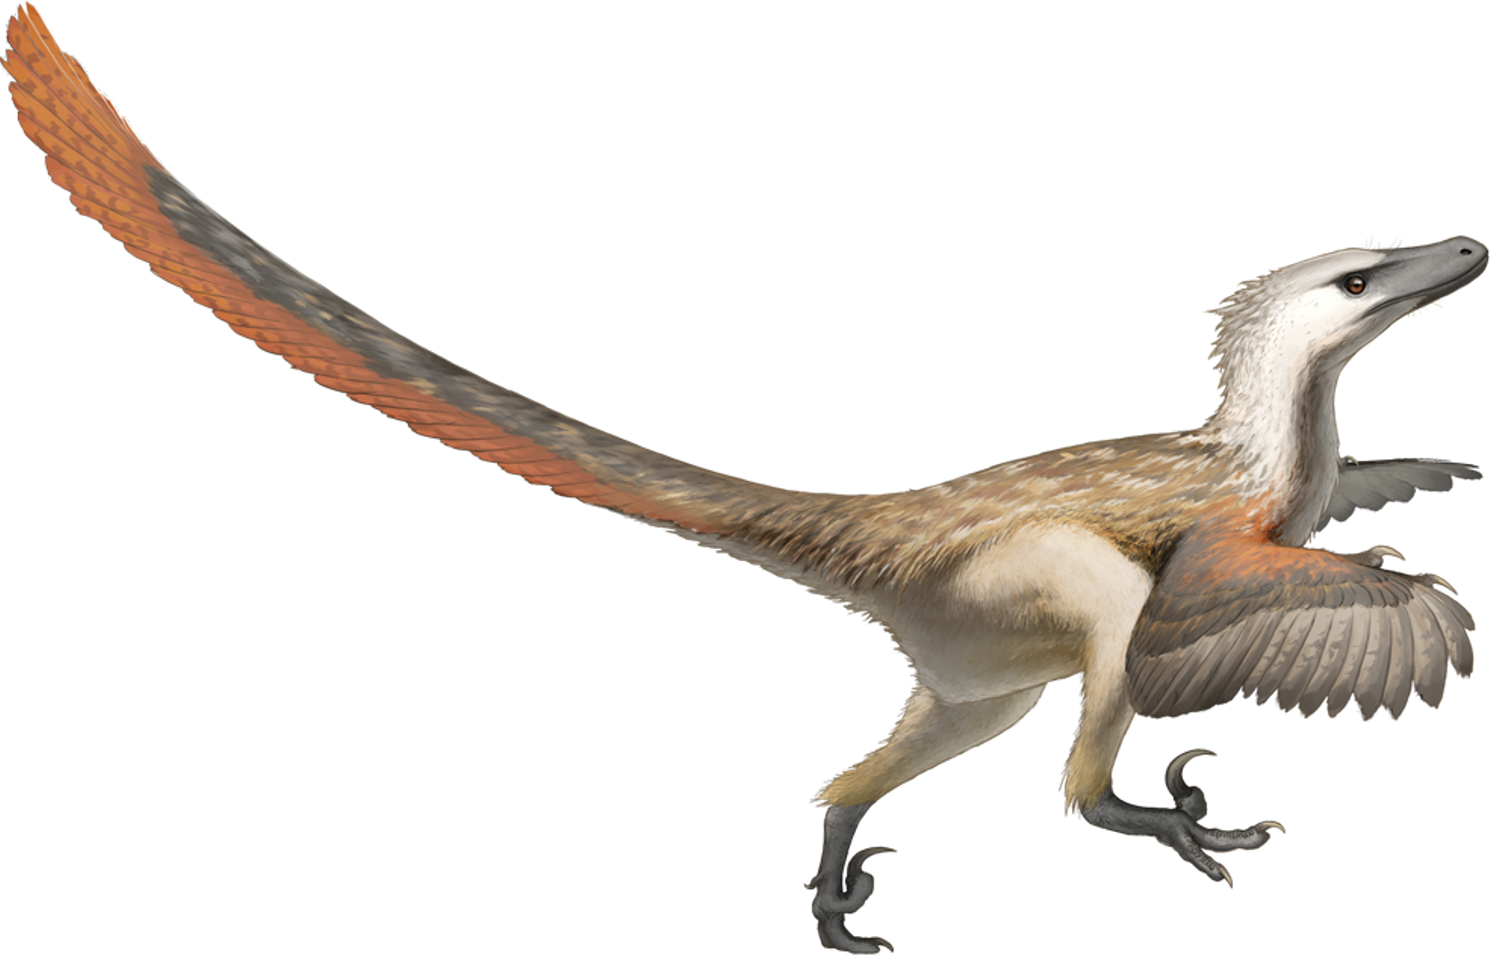 dessiner des dinosaures et d'autres créatures préhistoriques